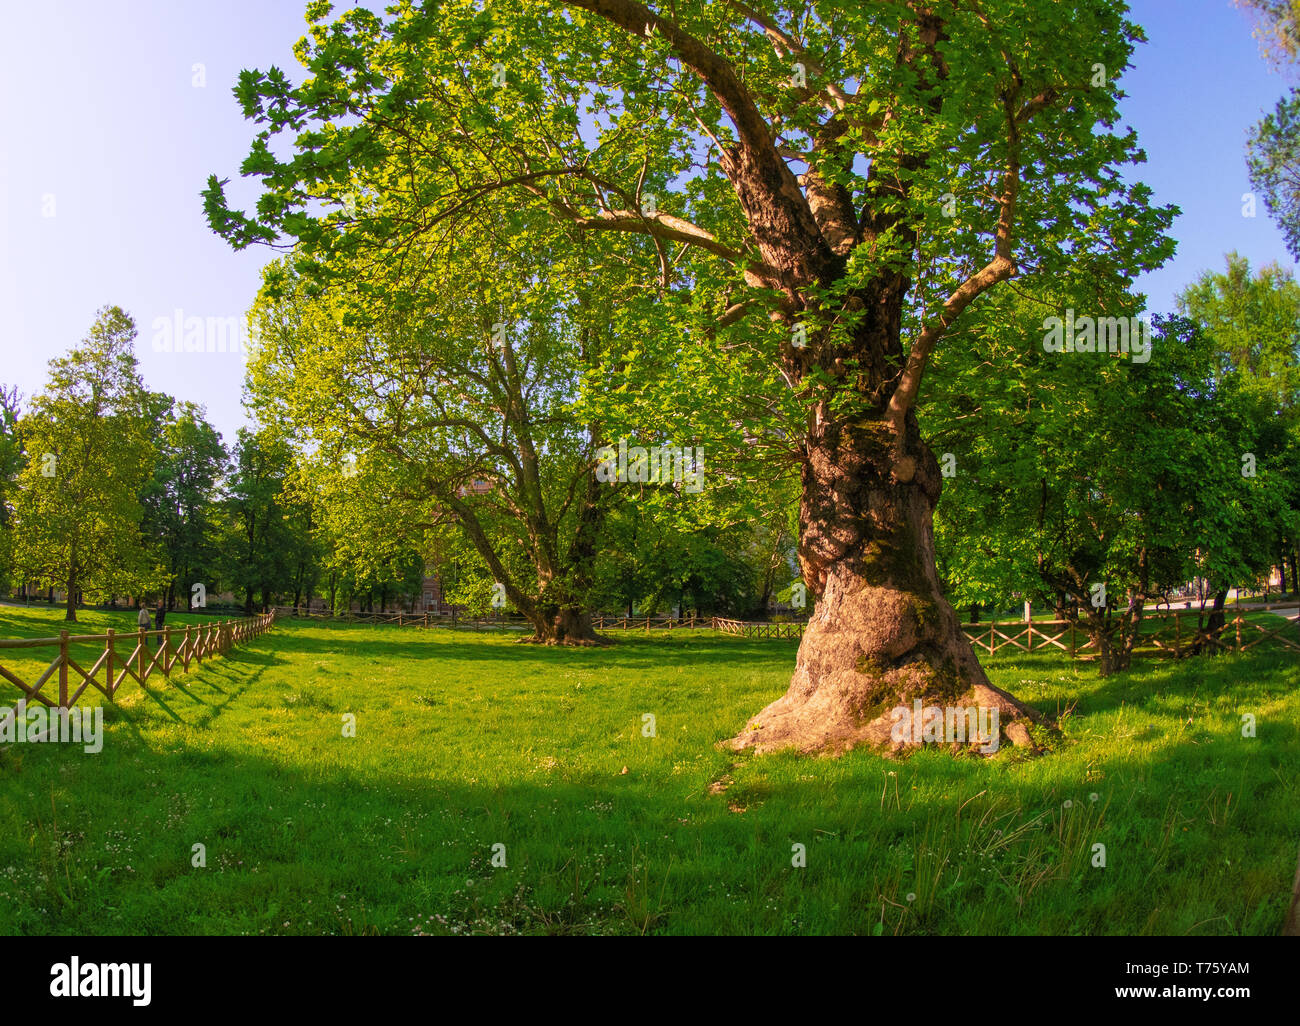 Monumentale Bäume in einem Park in einem eingezäunten Bereich. Mailand - Italien Stockfoto